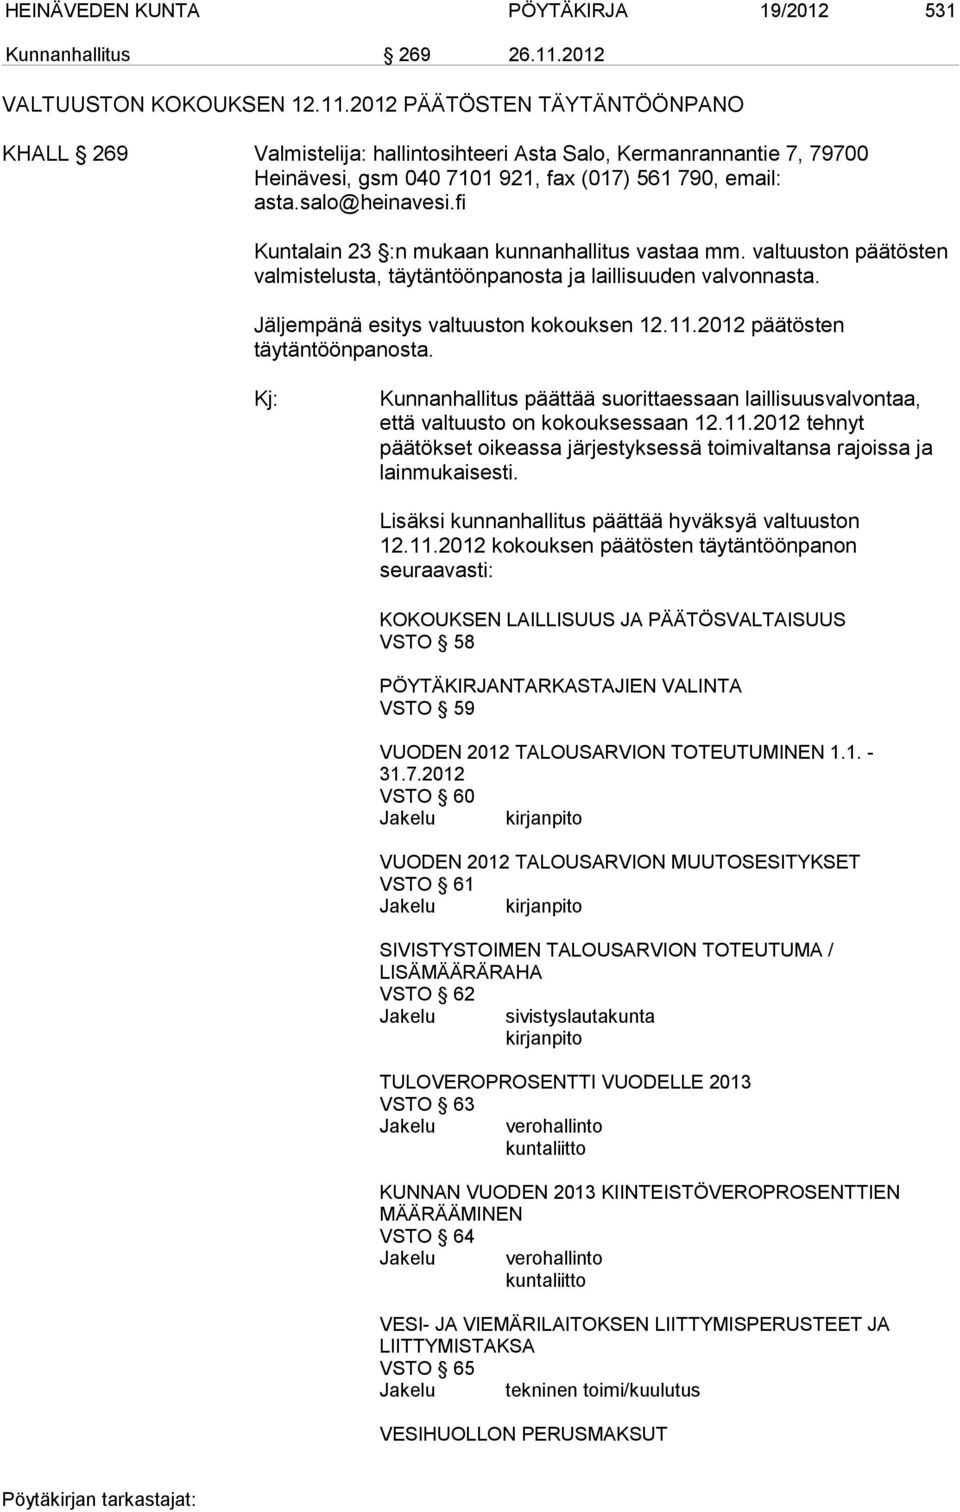 salo@heinavesi.fi Kuntalain 23 :n mukaan kunnanhallitus vastaa mm. valtuuston päätösten valmistelusta, täytäntöönpanosta ja laillisuuden valvonnasta. Jäljempänä esitys valtuuston kokouksen 12.11.